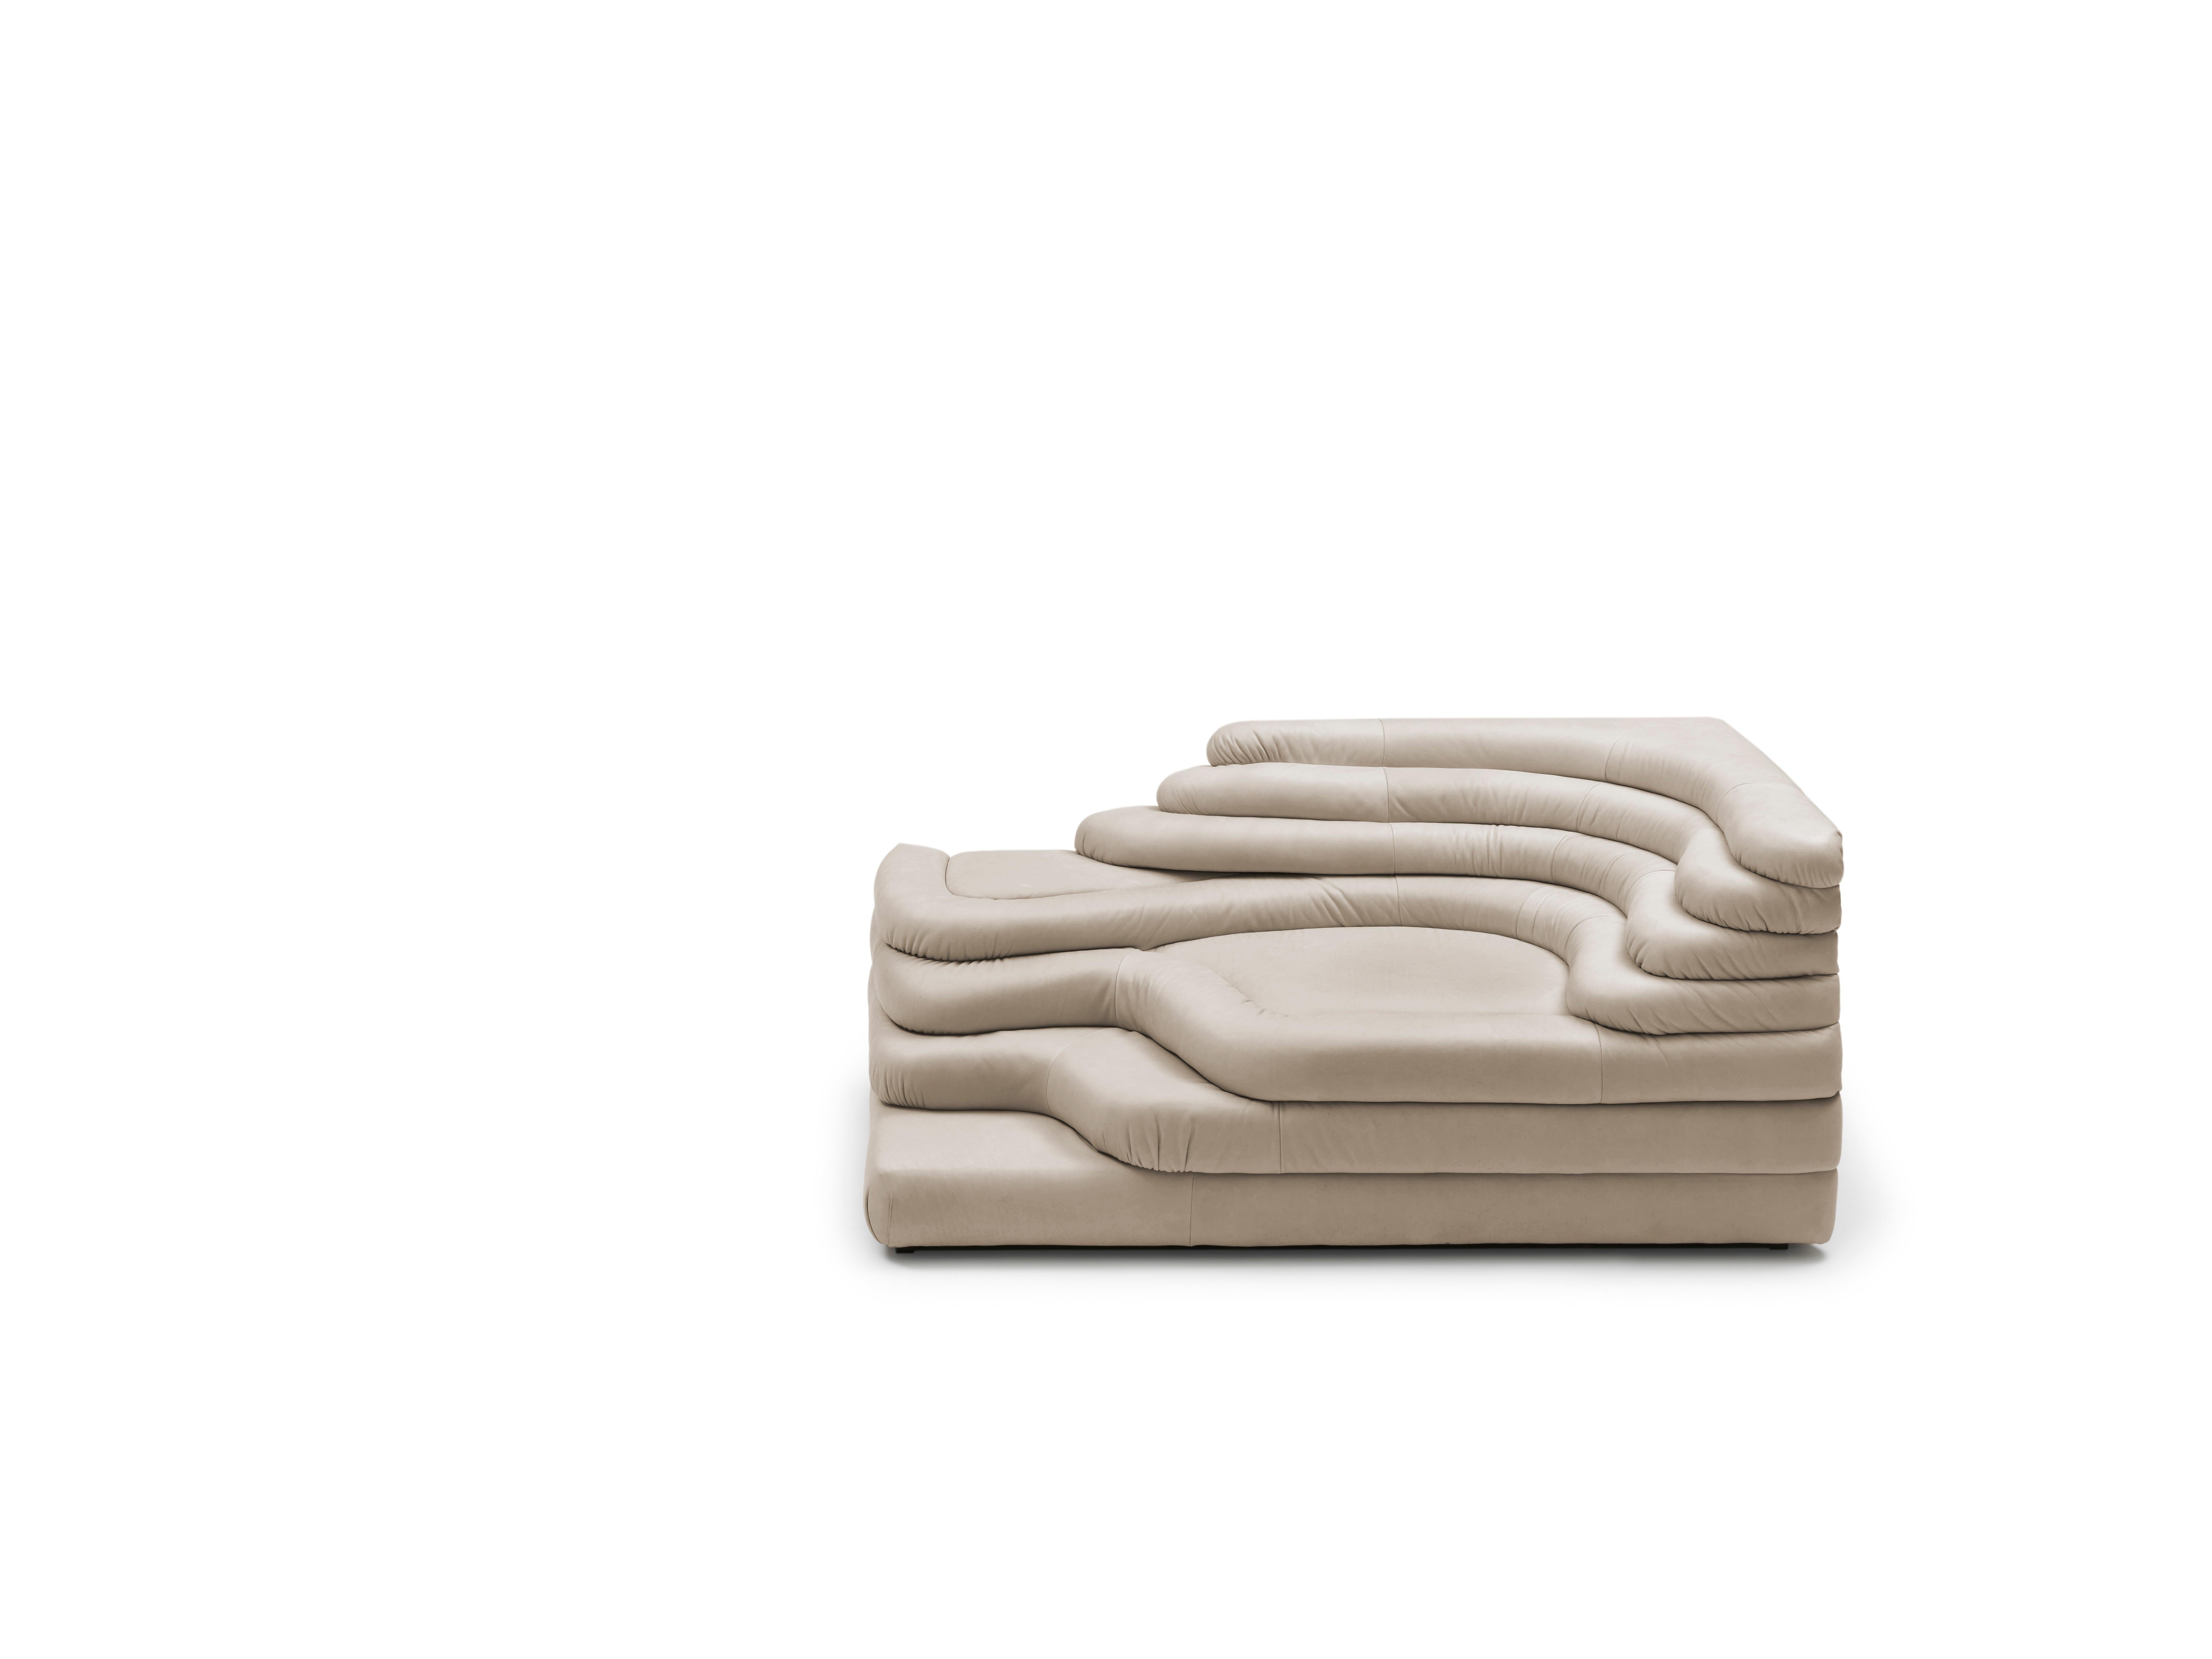 Canapé DS-1025 de De Sede
Design/One : Ubald Klug
Dimensions : D 91 x L 156 x H 70 cm
Matériaux : Revêtement en SEDEX avec coussin en ouate. Cadre stable et compact en hêtre et en panneaux.

Les prix peuvent varier en fonction des matériaux choisis